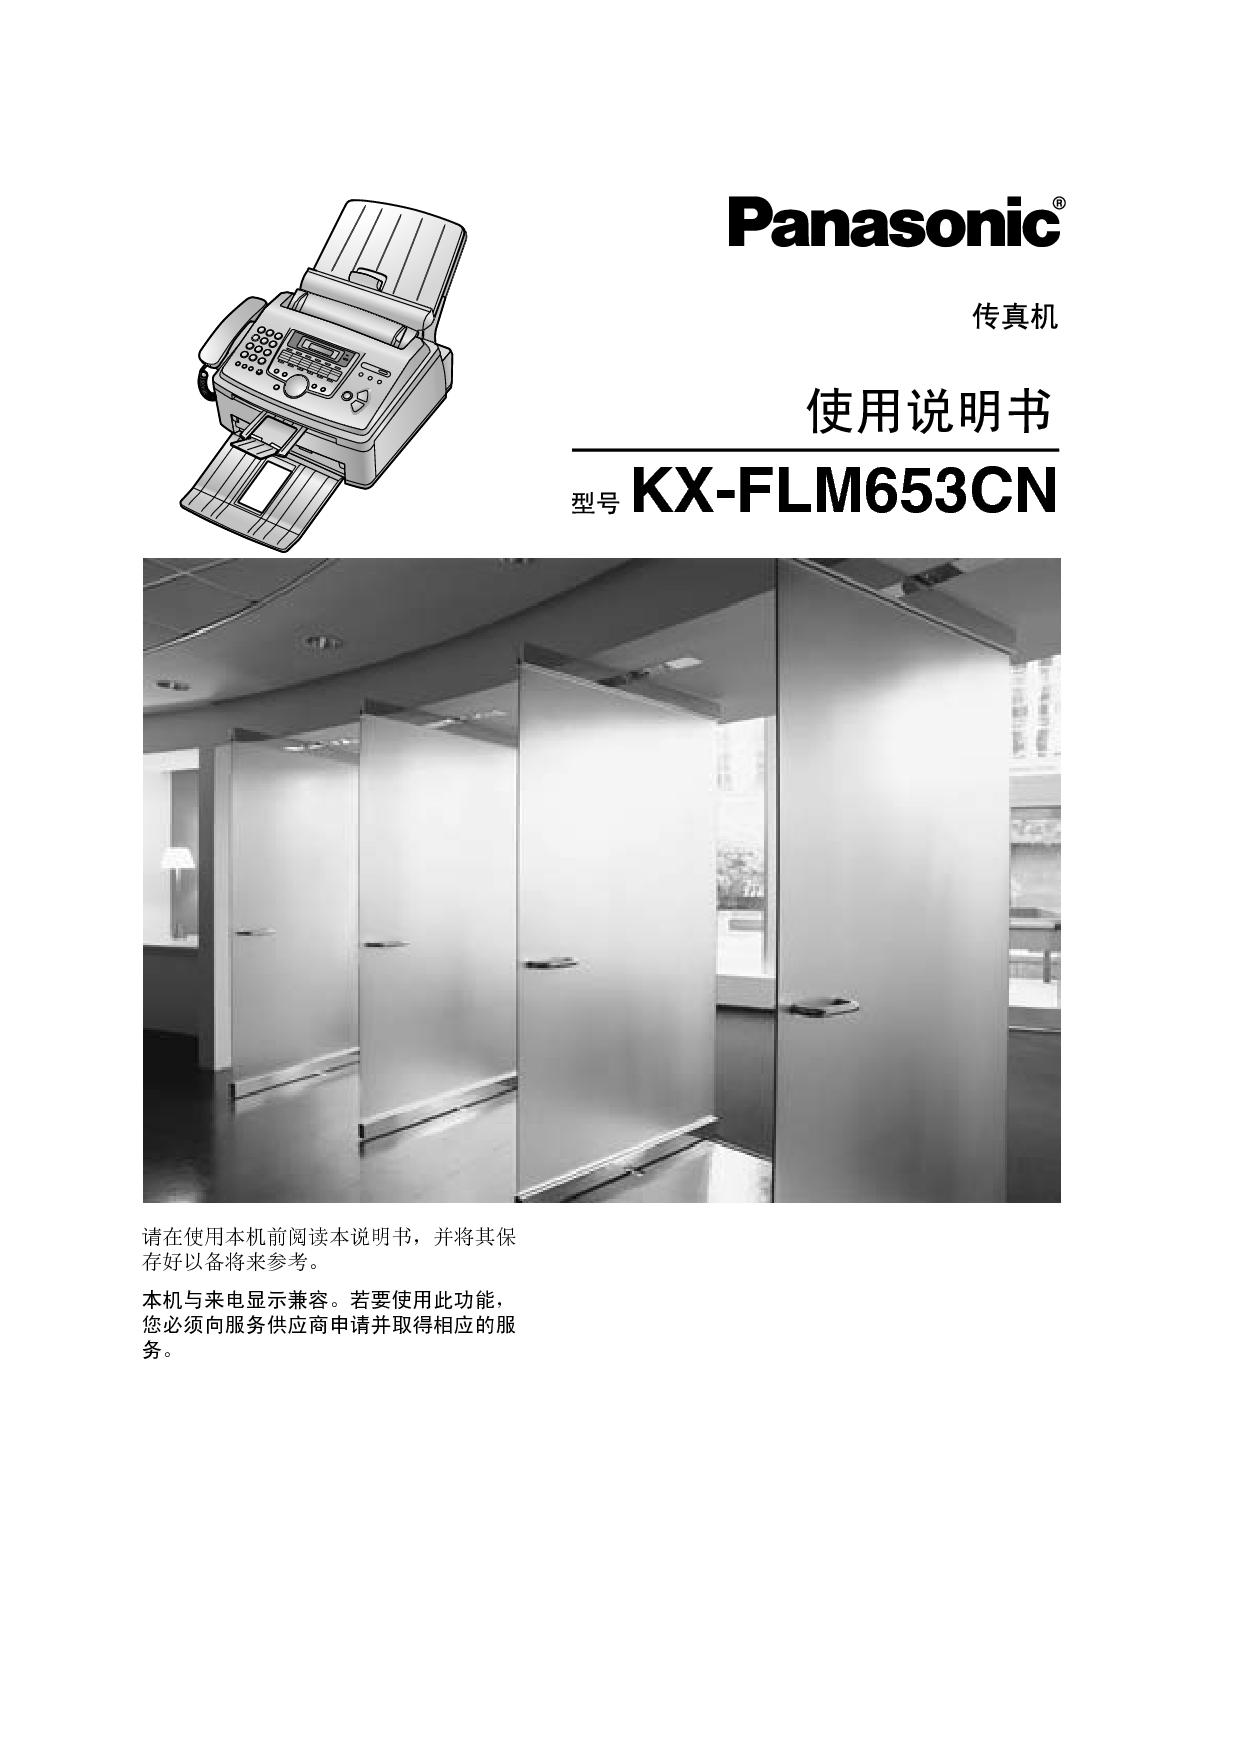 松下 Panasonic KX-FLM653CN 说明书 封面